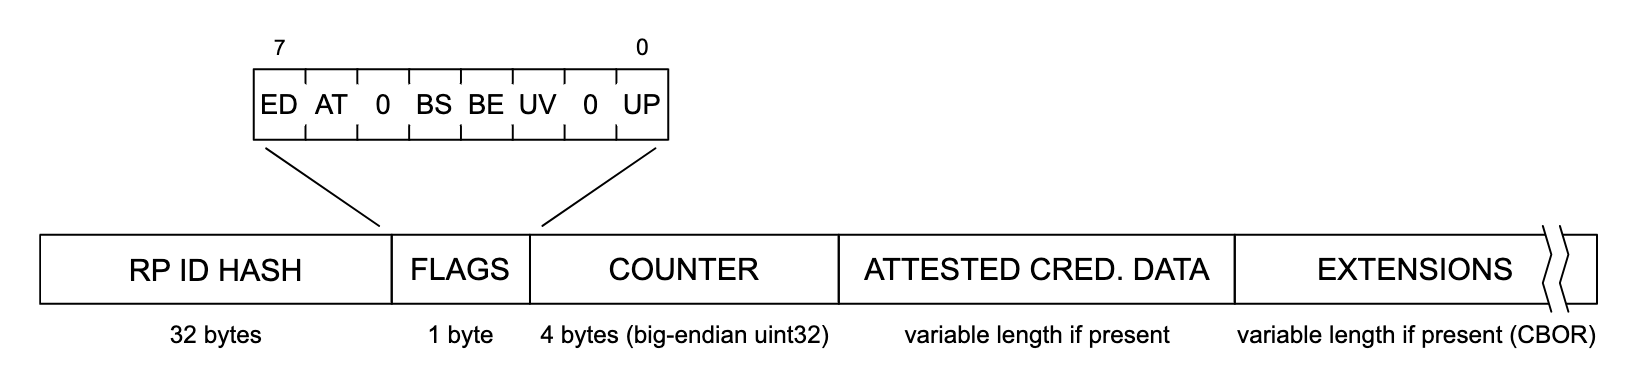 Una rappresentazione della struttura dei dati di autenticazione. Da sinistra a destra, ogni sezione della struttura dei dati legge &quot;RP ID HASH&quot; (32 byte), &quot;FLAGS&quot; (1 byte), &quot;COUNTER&quot; (4 byte, uint32 big-endian), &quot;ATTESTE CRED&quot;. DATA&quot; (lunghezza variabile se presente) ed &quot;EXTENSIONS&quot; (lunghezza variabile se presente (CBOR)). La sezione &quot;FLAGS&quot; è stata espansa per mostrare un elenco di potenziali flag, con le etichette &quot;ED&quot;, &quot;AT&quot;, &quot;0&quot;, &quot;BS&quot;, &quot;BE&quot;, &quot;UV&quot;, &quot;0&quot; e &quot;UP&quot;.